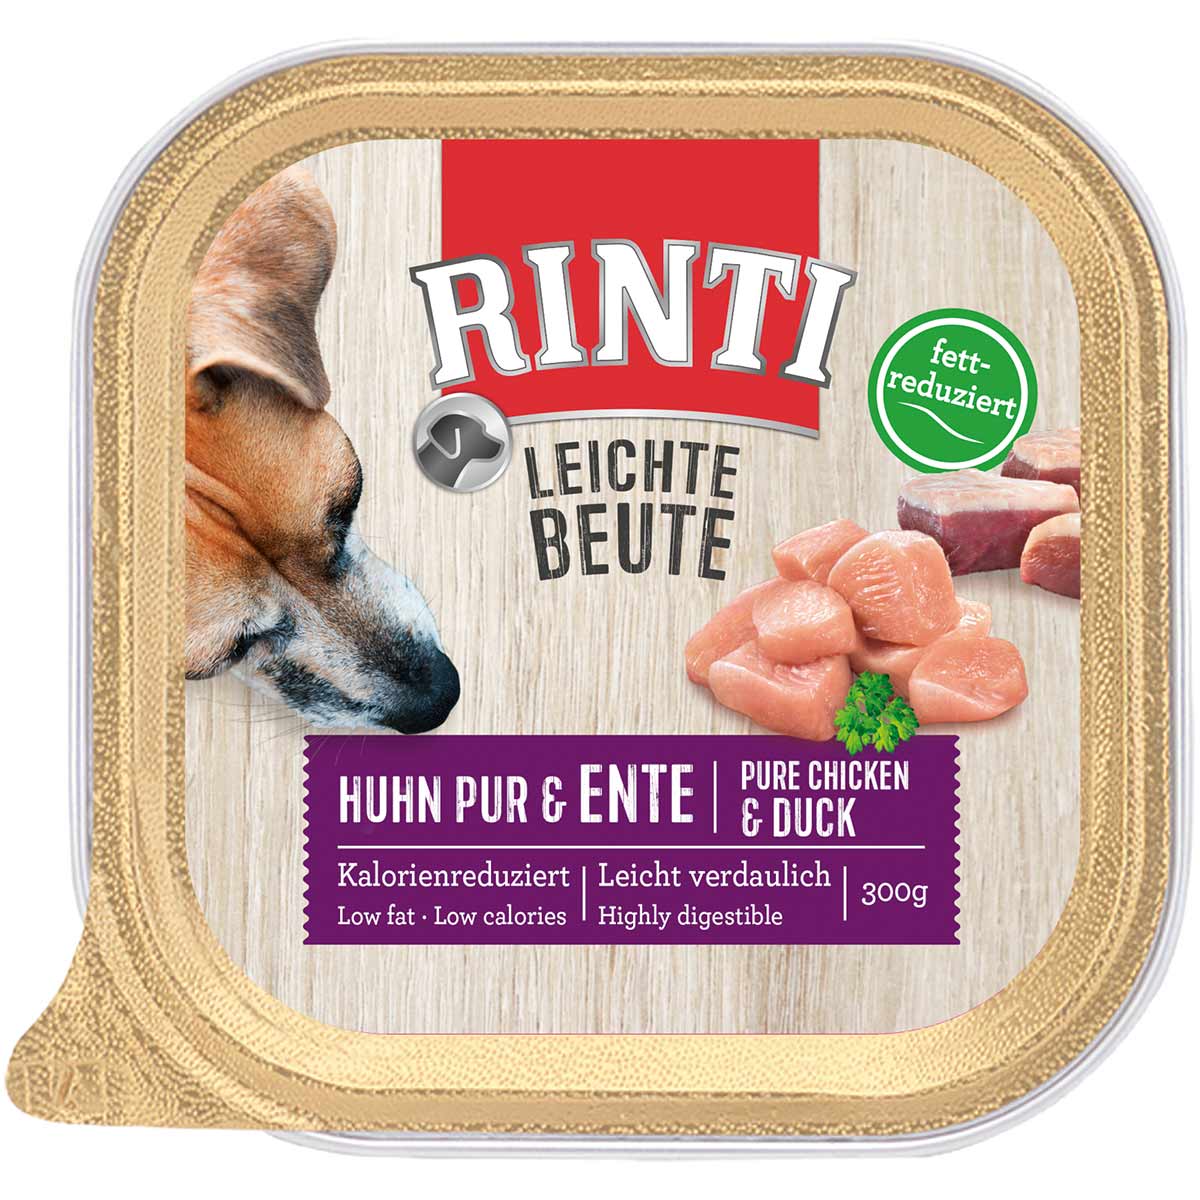 Rinti Leichte Beute Huhn pur & Ente 9x300g von Rinti